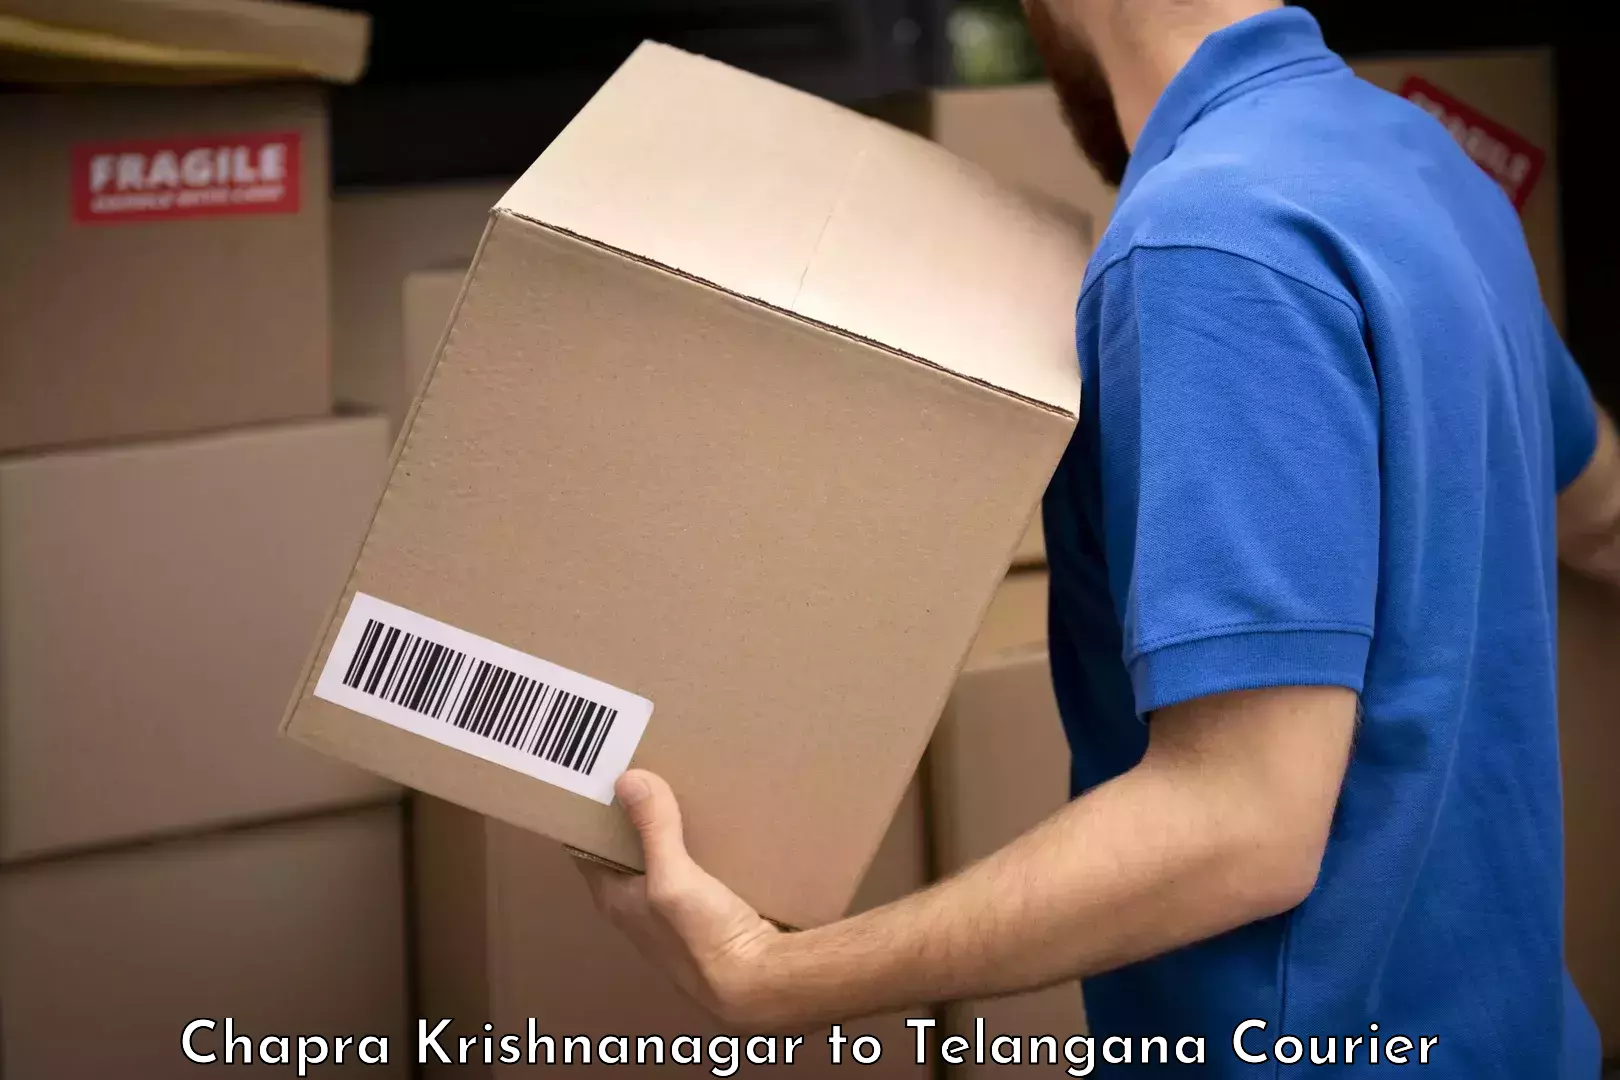 Baggage courier service Chapra Krishnanagar to Kakeshwaram